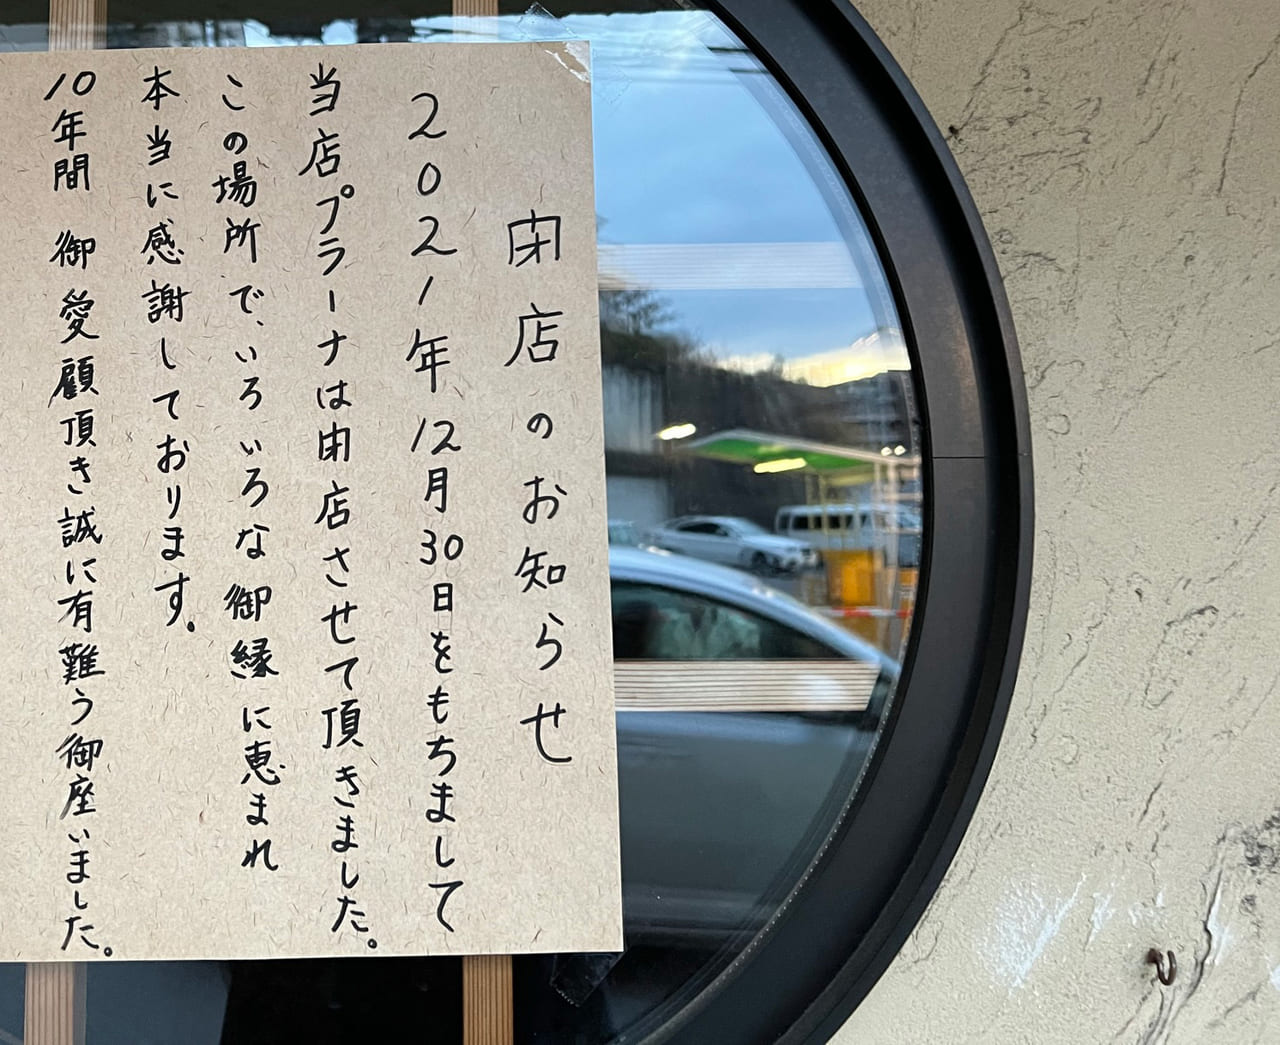 奈良市 菖蒲池の超人気インドカレー店 プラーナ さんが12月30日に閉店されました 号外net 奈良市